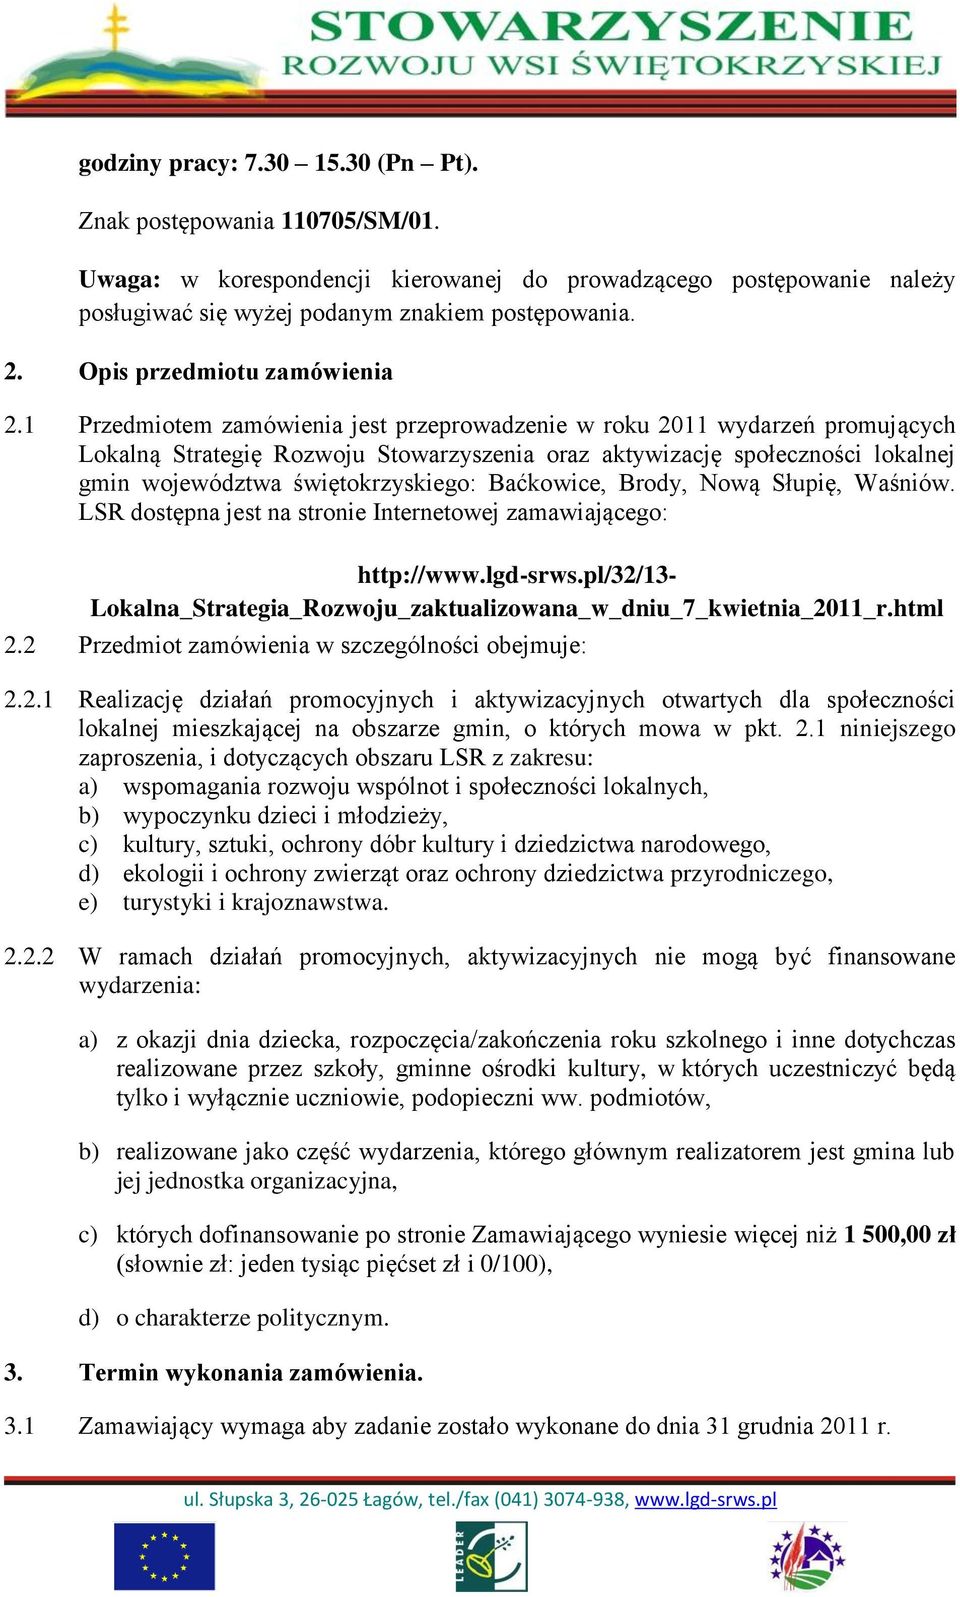 1 Przedmiotem zamówienia jest przeprowadzenie w roku 2011 wydarzeń promujących Lokalną Strategię Rozwoju Stowarzyszenia oraz aktywizację społeczności lokalnej gmin województwa świętokrzyskiego: